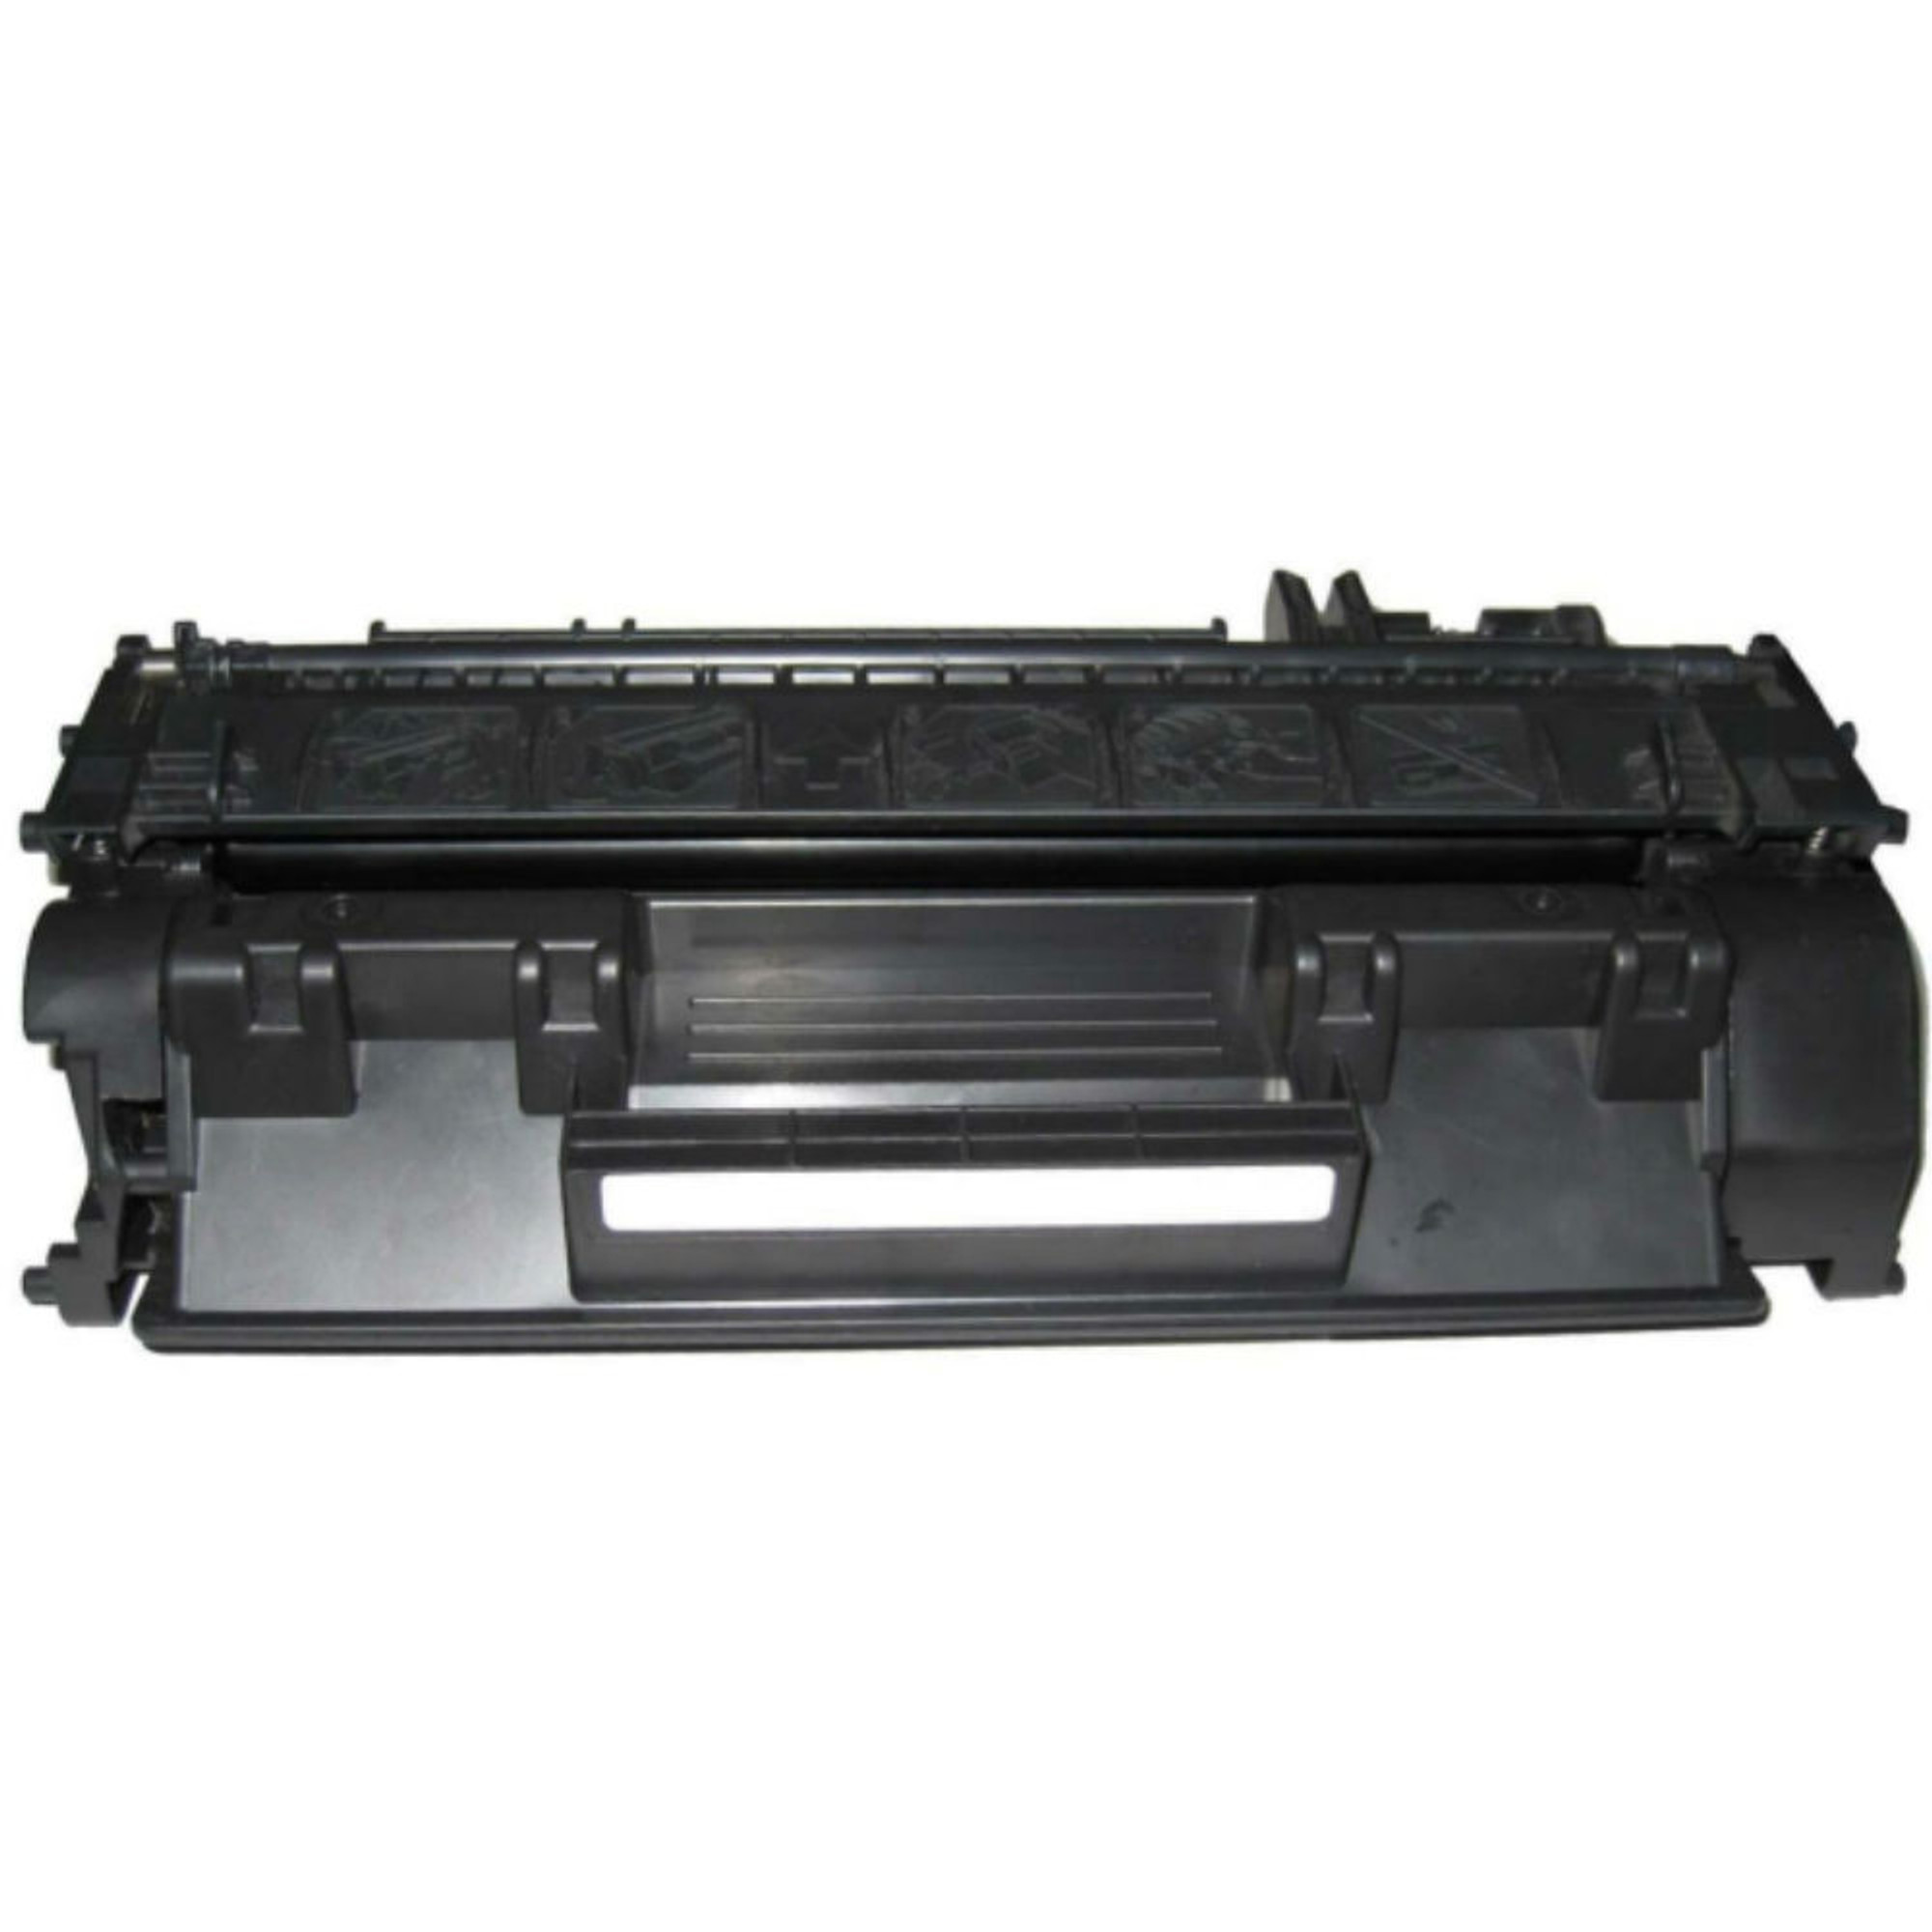 Regular Toner for HP Laserjet P2035n, P2055, P2055dn & Printers, HP 05A